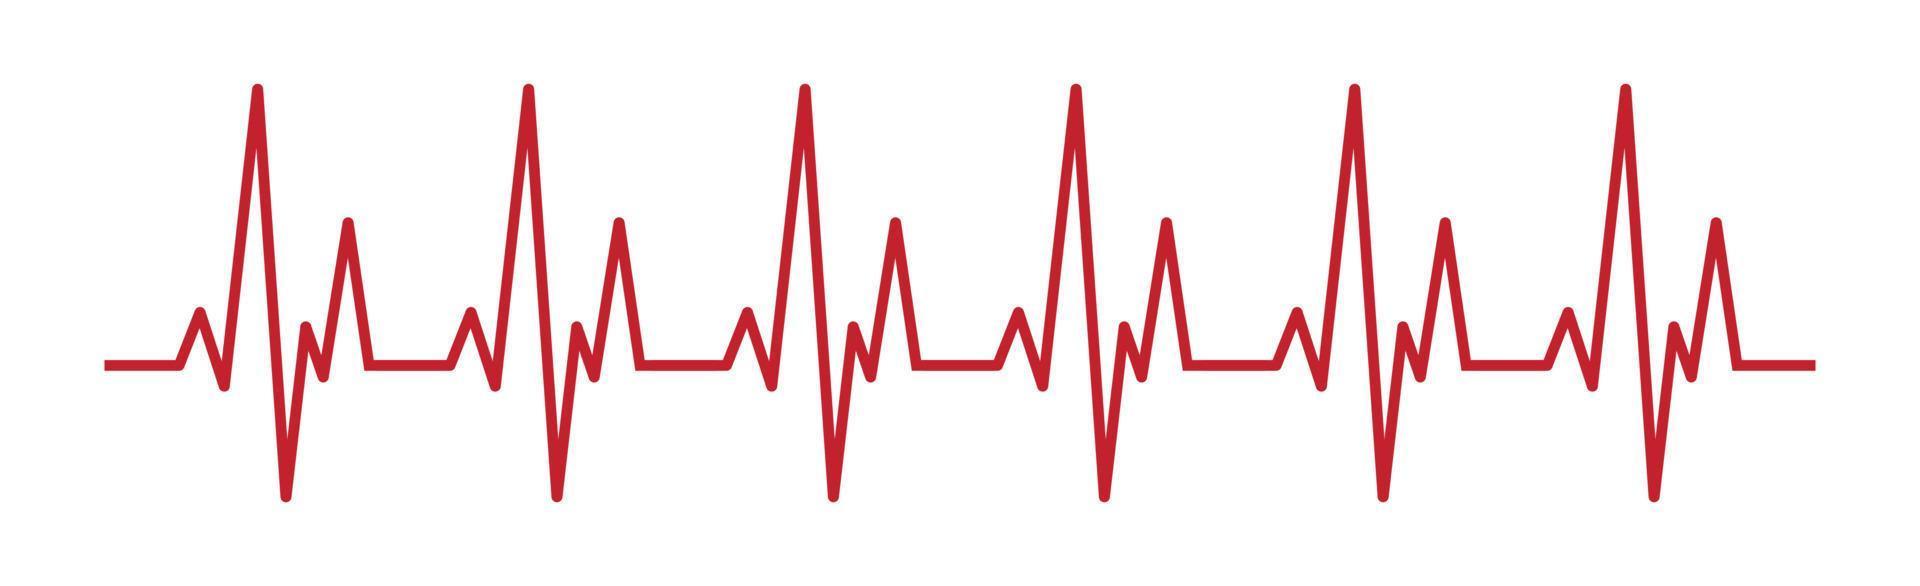 pulso cardíaco - línea roja curva sobre fondo blanco, pruebas médicas - vector